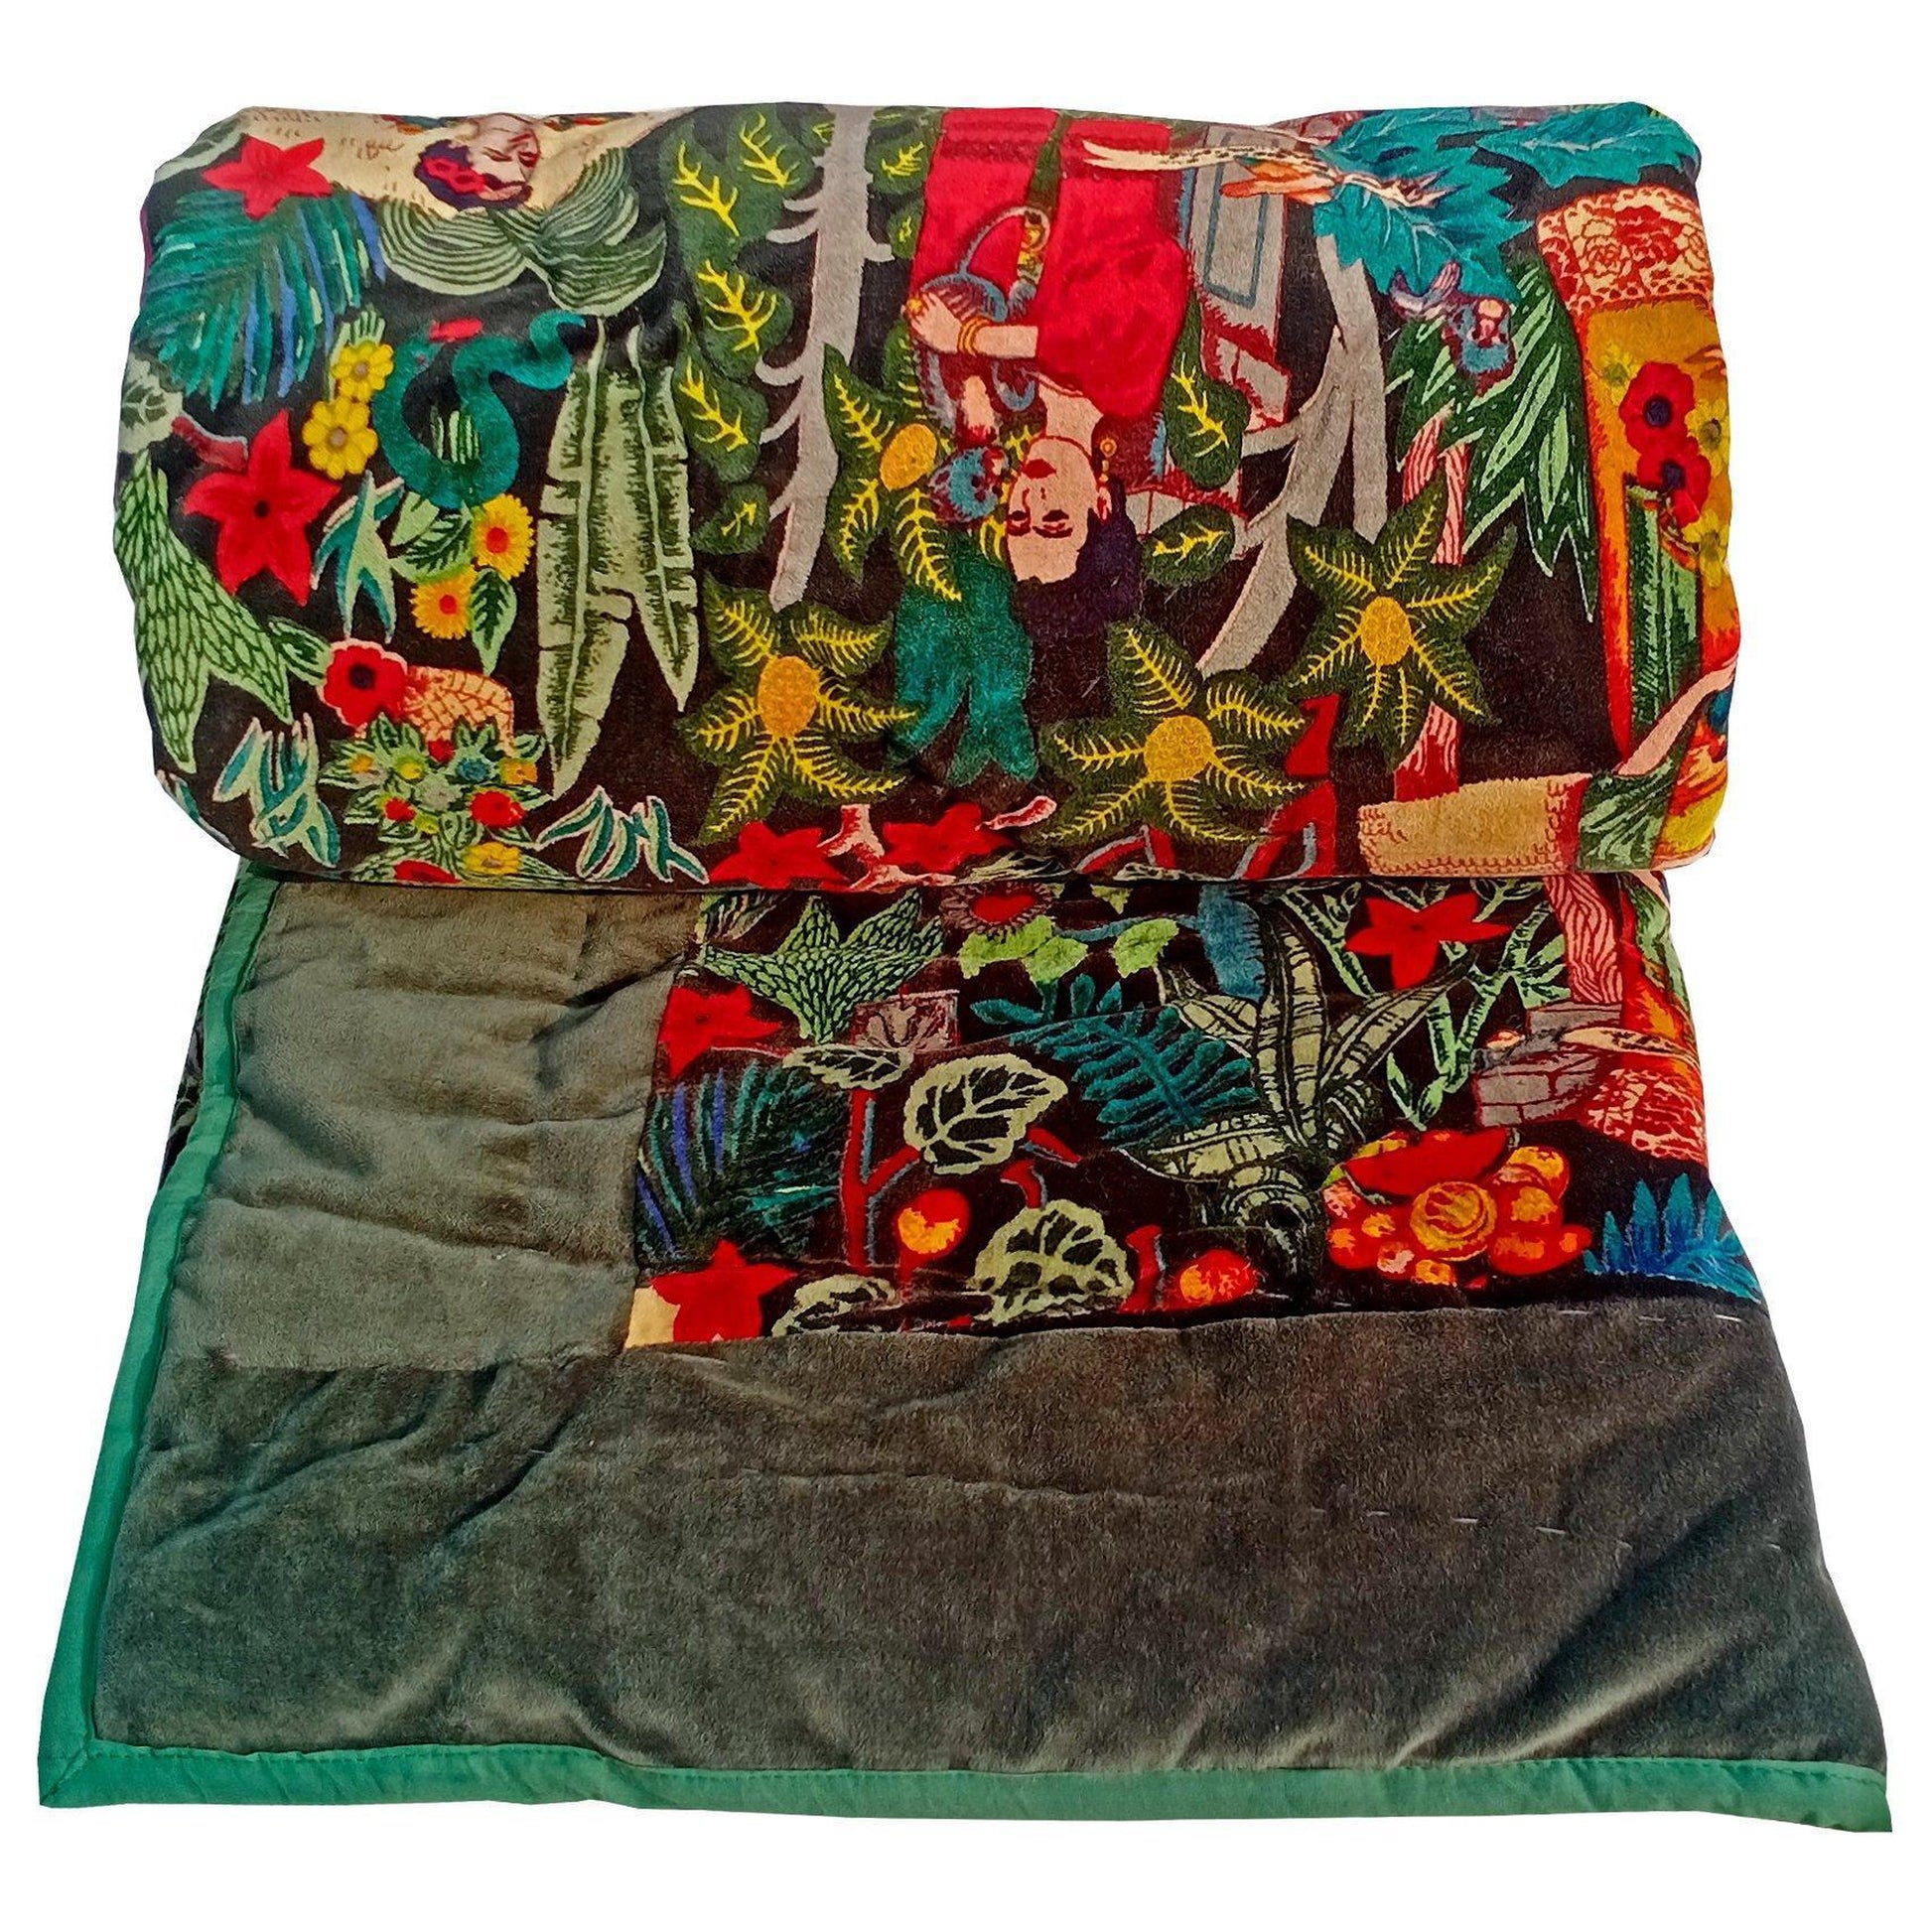 Frida Kahlo Cotton Velvet Quilt -Border - The Teal Thread